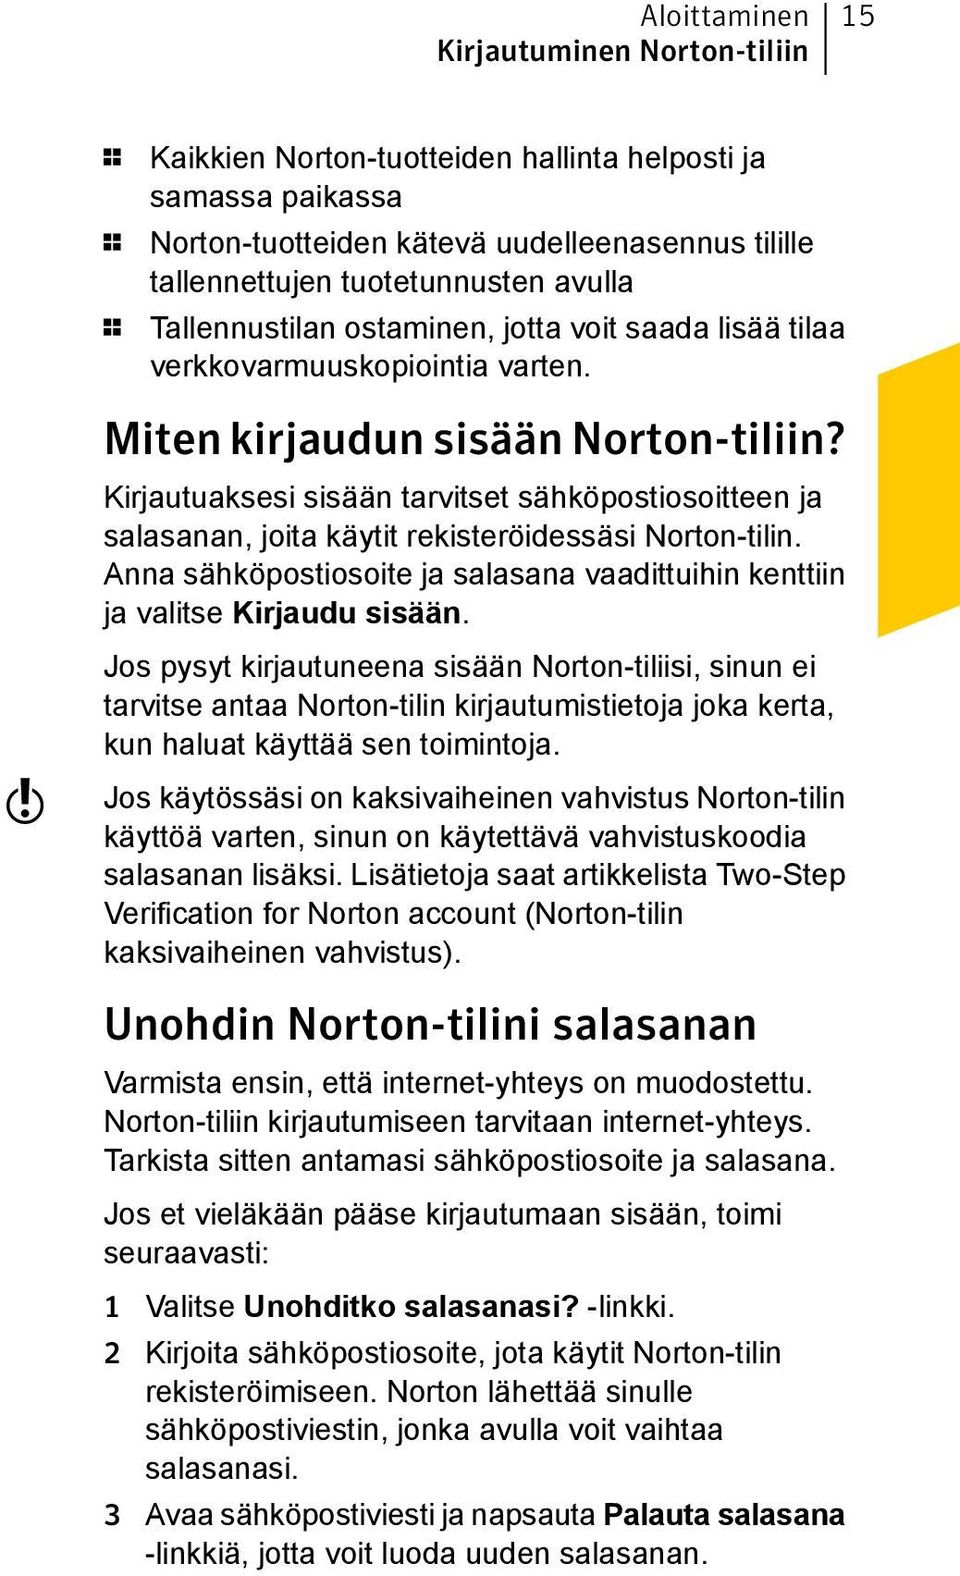 Kirjautuaksesi sisään tarvitset sähköpostiosoitteen ja salasanan, joita käytit rekisteröidessäsi Norton-tilin. Anna sähköpostiosoite ja salasana vaadittuihin kenttiin ja valitse Kirjaudu sisään.